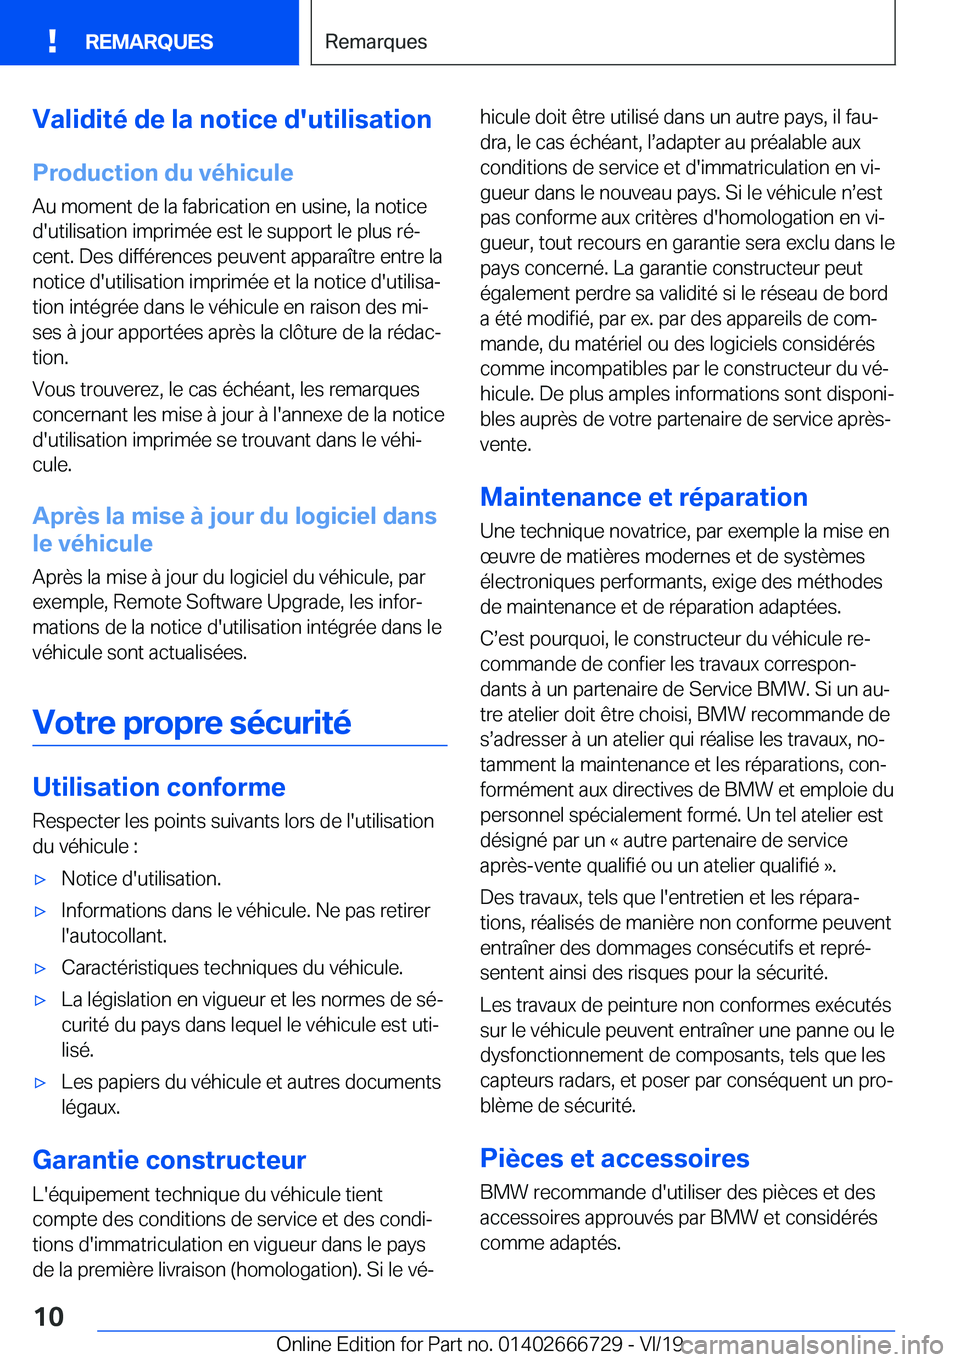 BMW M5 2020  Notices Demploi (in French) �V�a�l�i�d�i�t�é��d�e��l�a��n�o�t�i�c�e��d�'�u�t�i�l�i�s�a�t�i�o�n
�P�r�o�d�u�c�t�i�o�n��d�u��v�é�h�i�c�u�l�e
�A�u��m�o�m�e�n�t��d�e��l�a��f�a�b�r�i�c�a�t�i�o�n��e�n��u�s�i�n�e�,��l